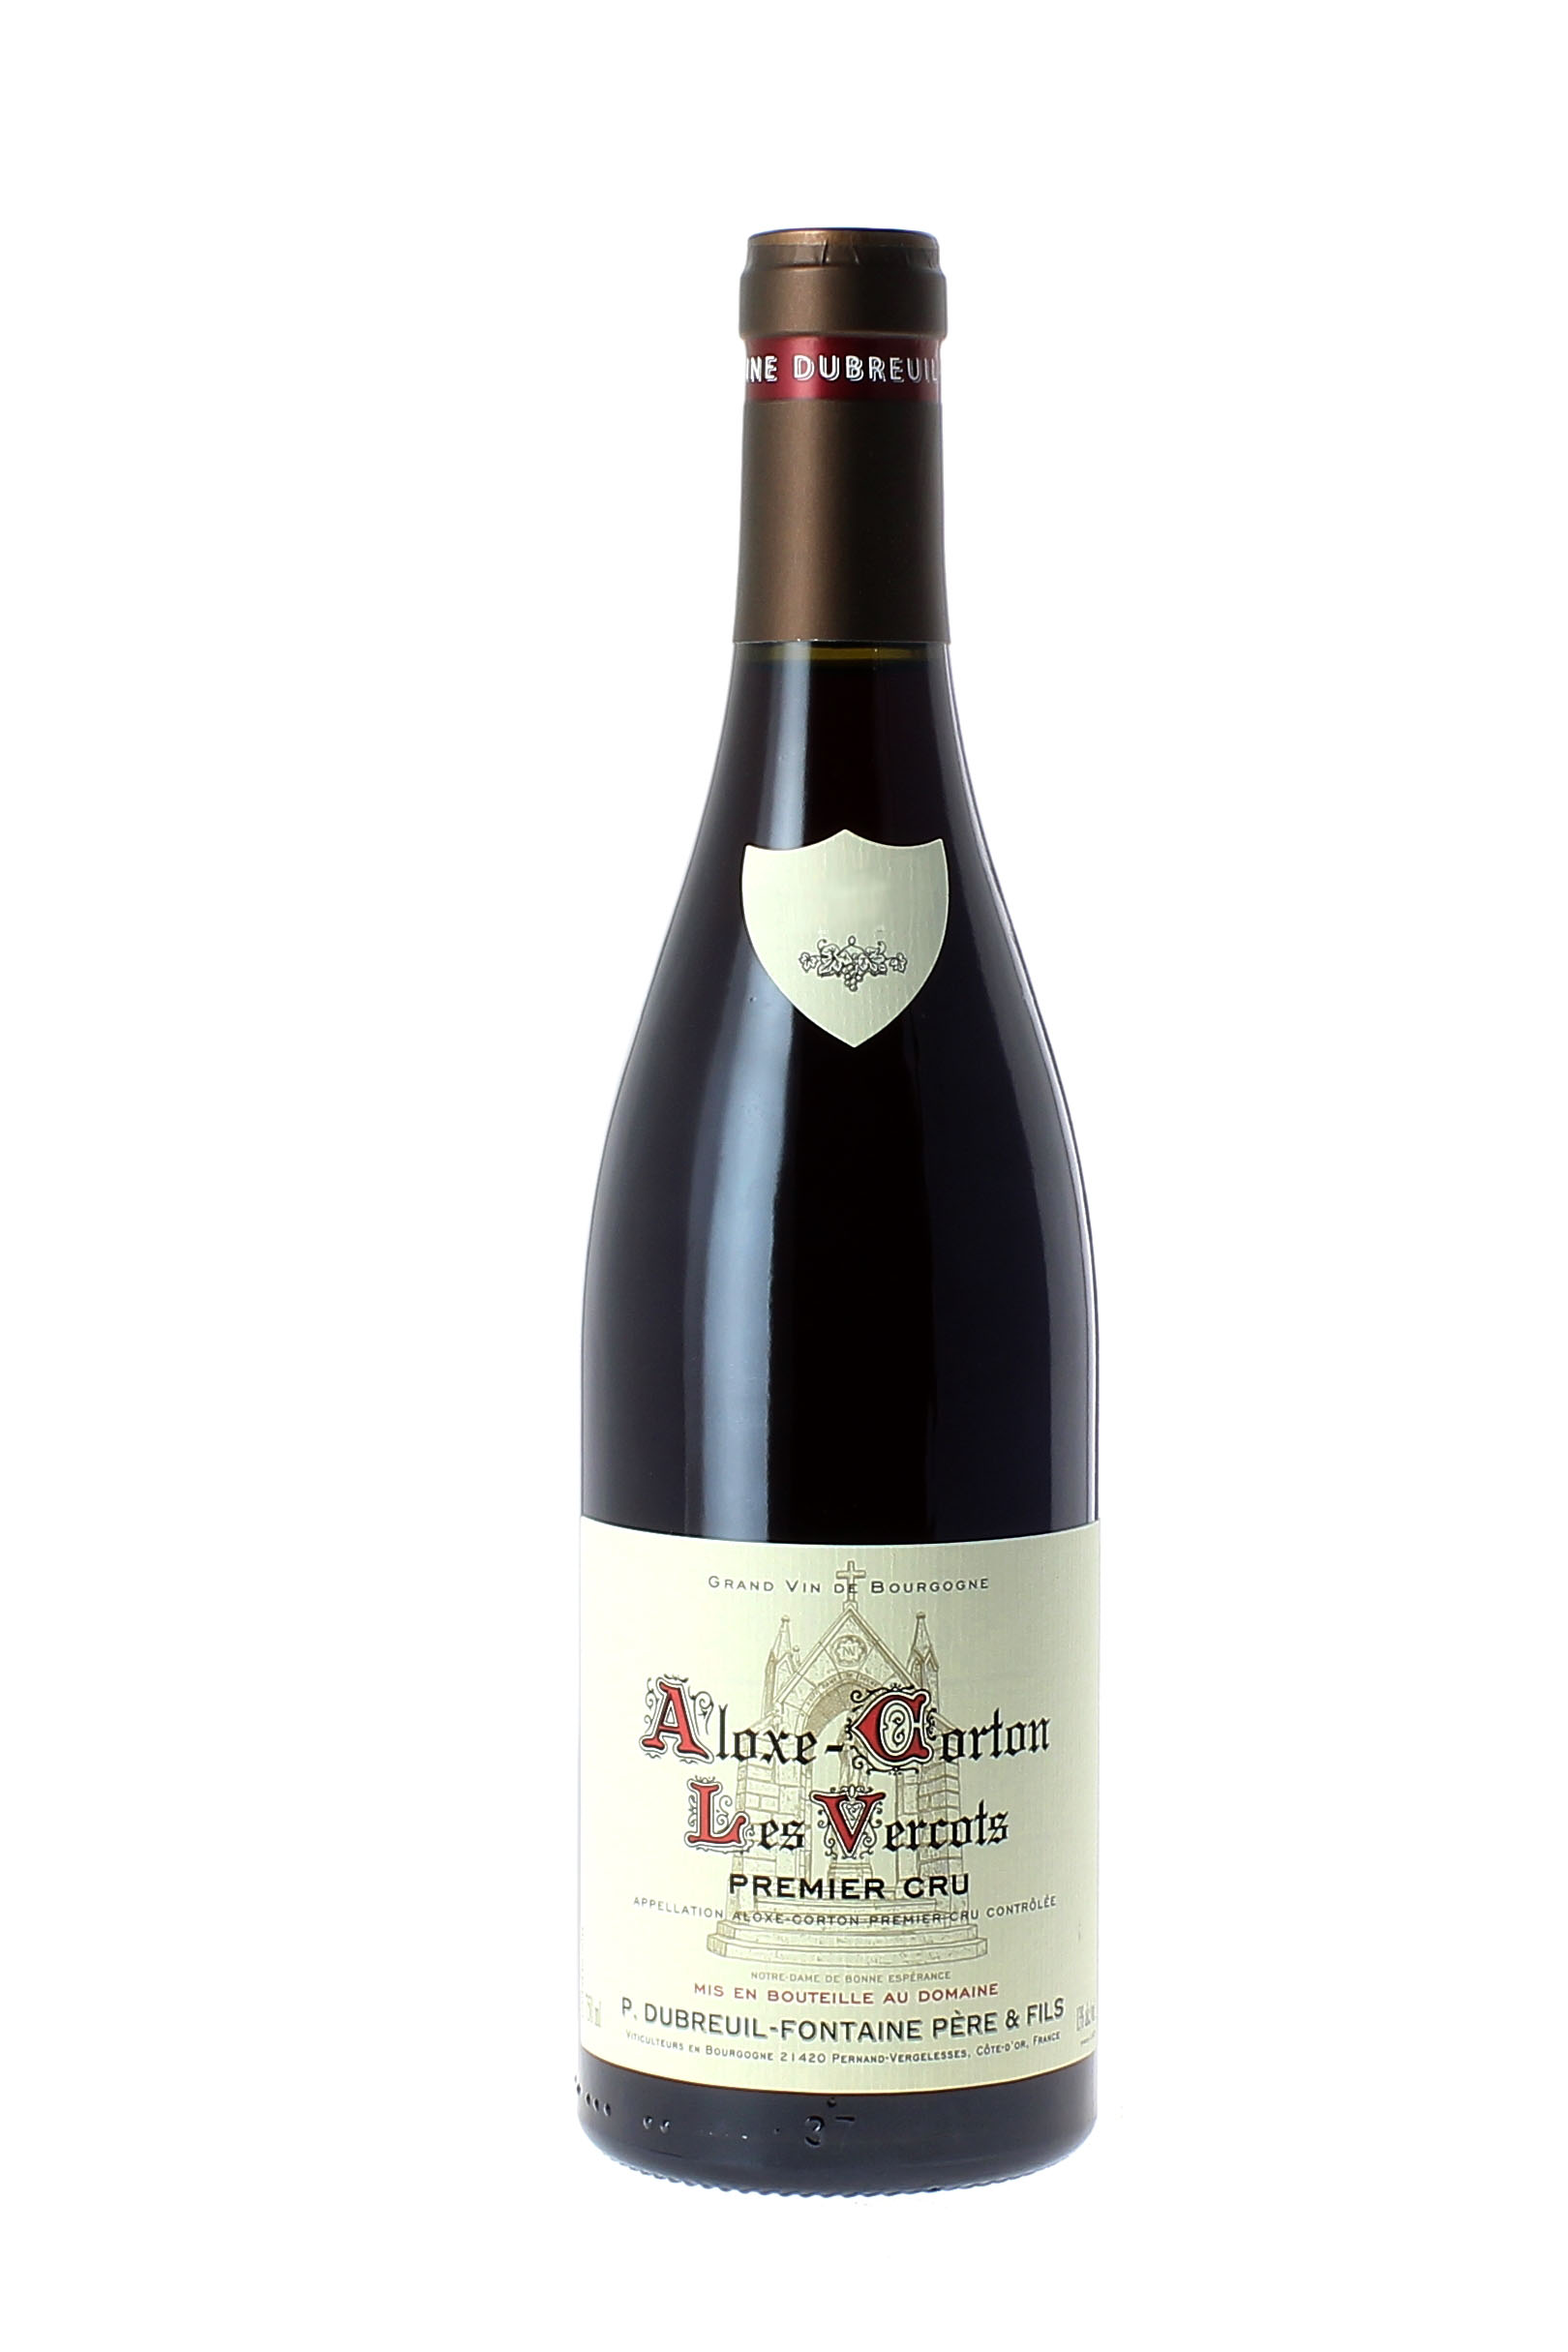 Aloxe corton les vercots 1er cru 2015 Domaine DUBREUIL FONTAINE, Bourgogne rouge